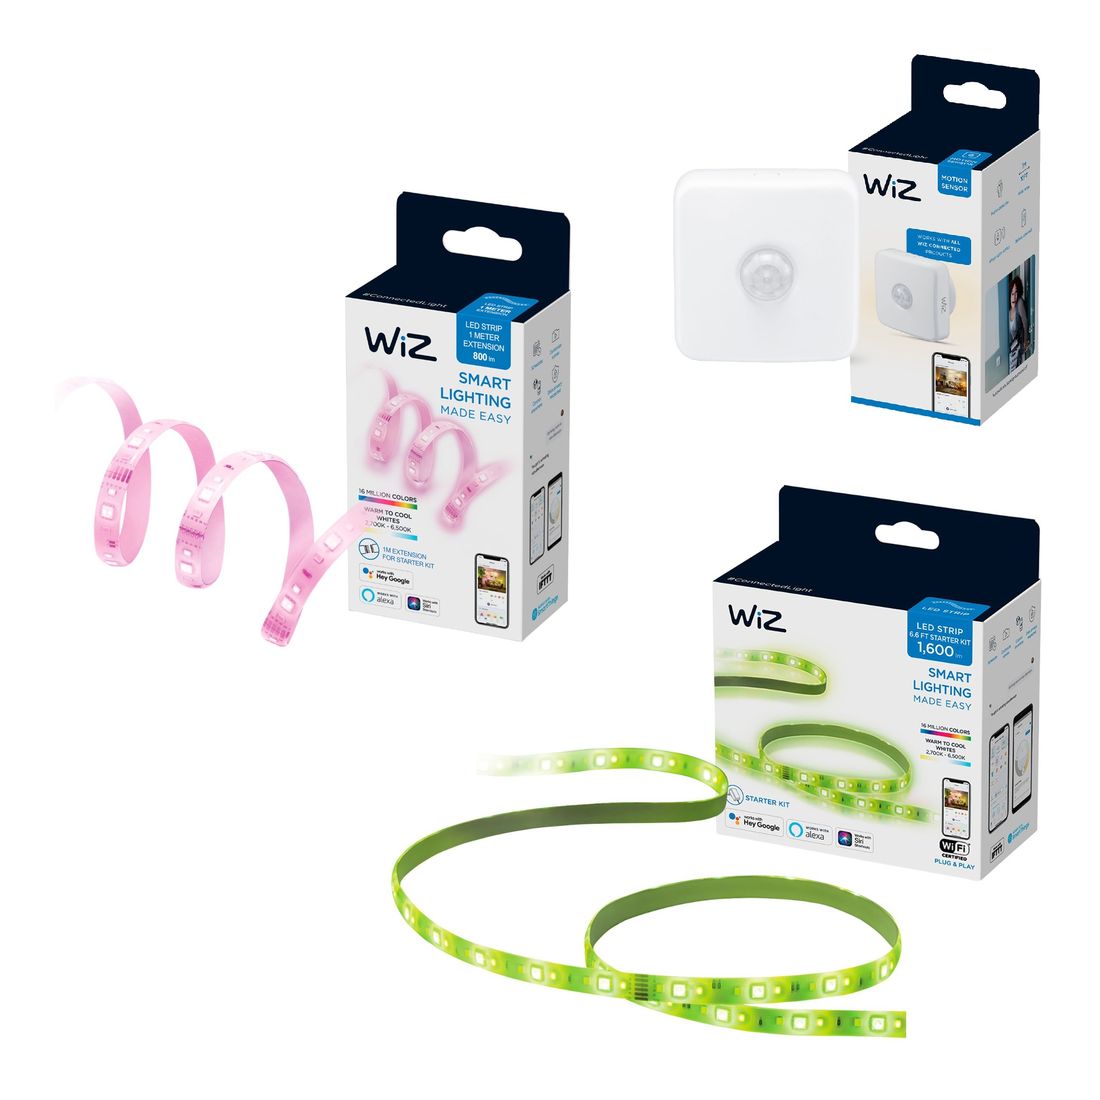 WiZ LED Strip Starter Kit 2m Full Color + WiZ LED Strip Extension 1m Full Color + Motion Sensor (Bundle)